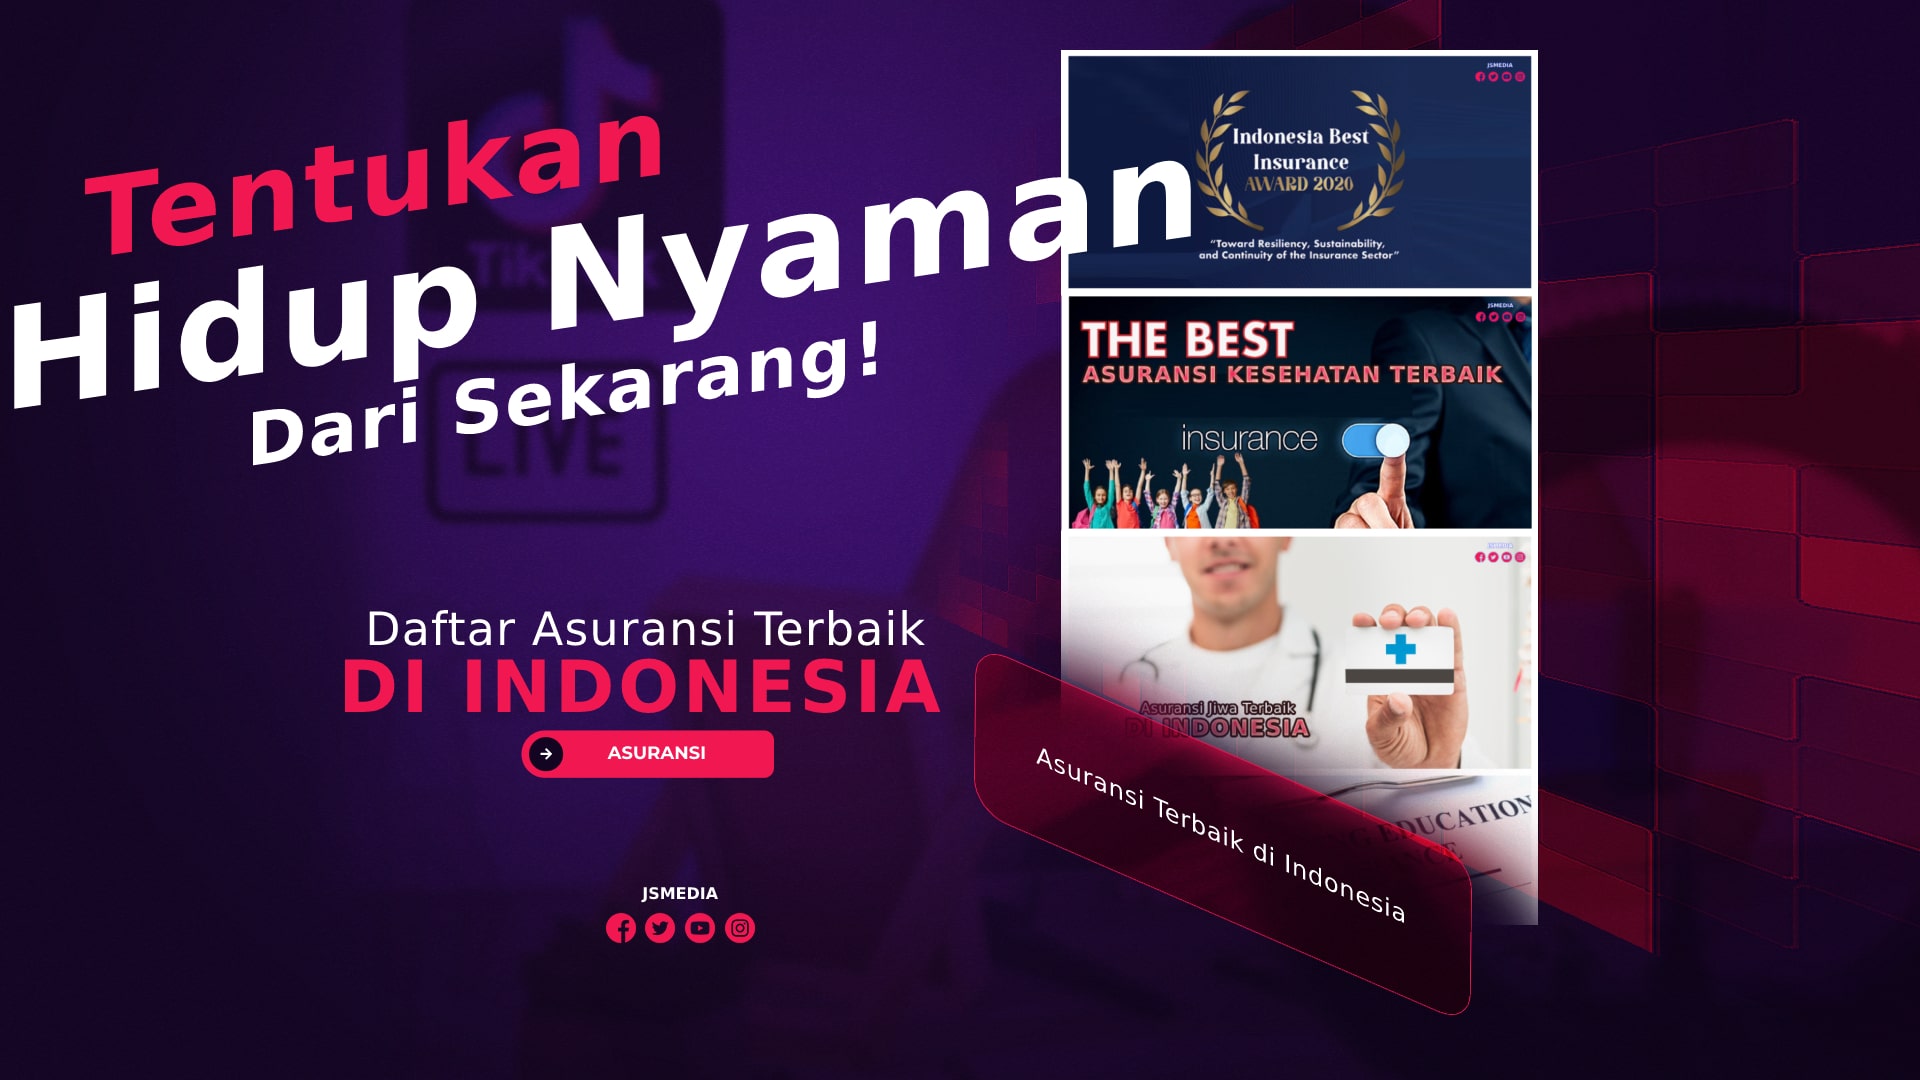 Daftar Asuransi Terbaik di Indonesia, Tentukan Sekarang!